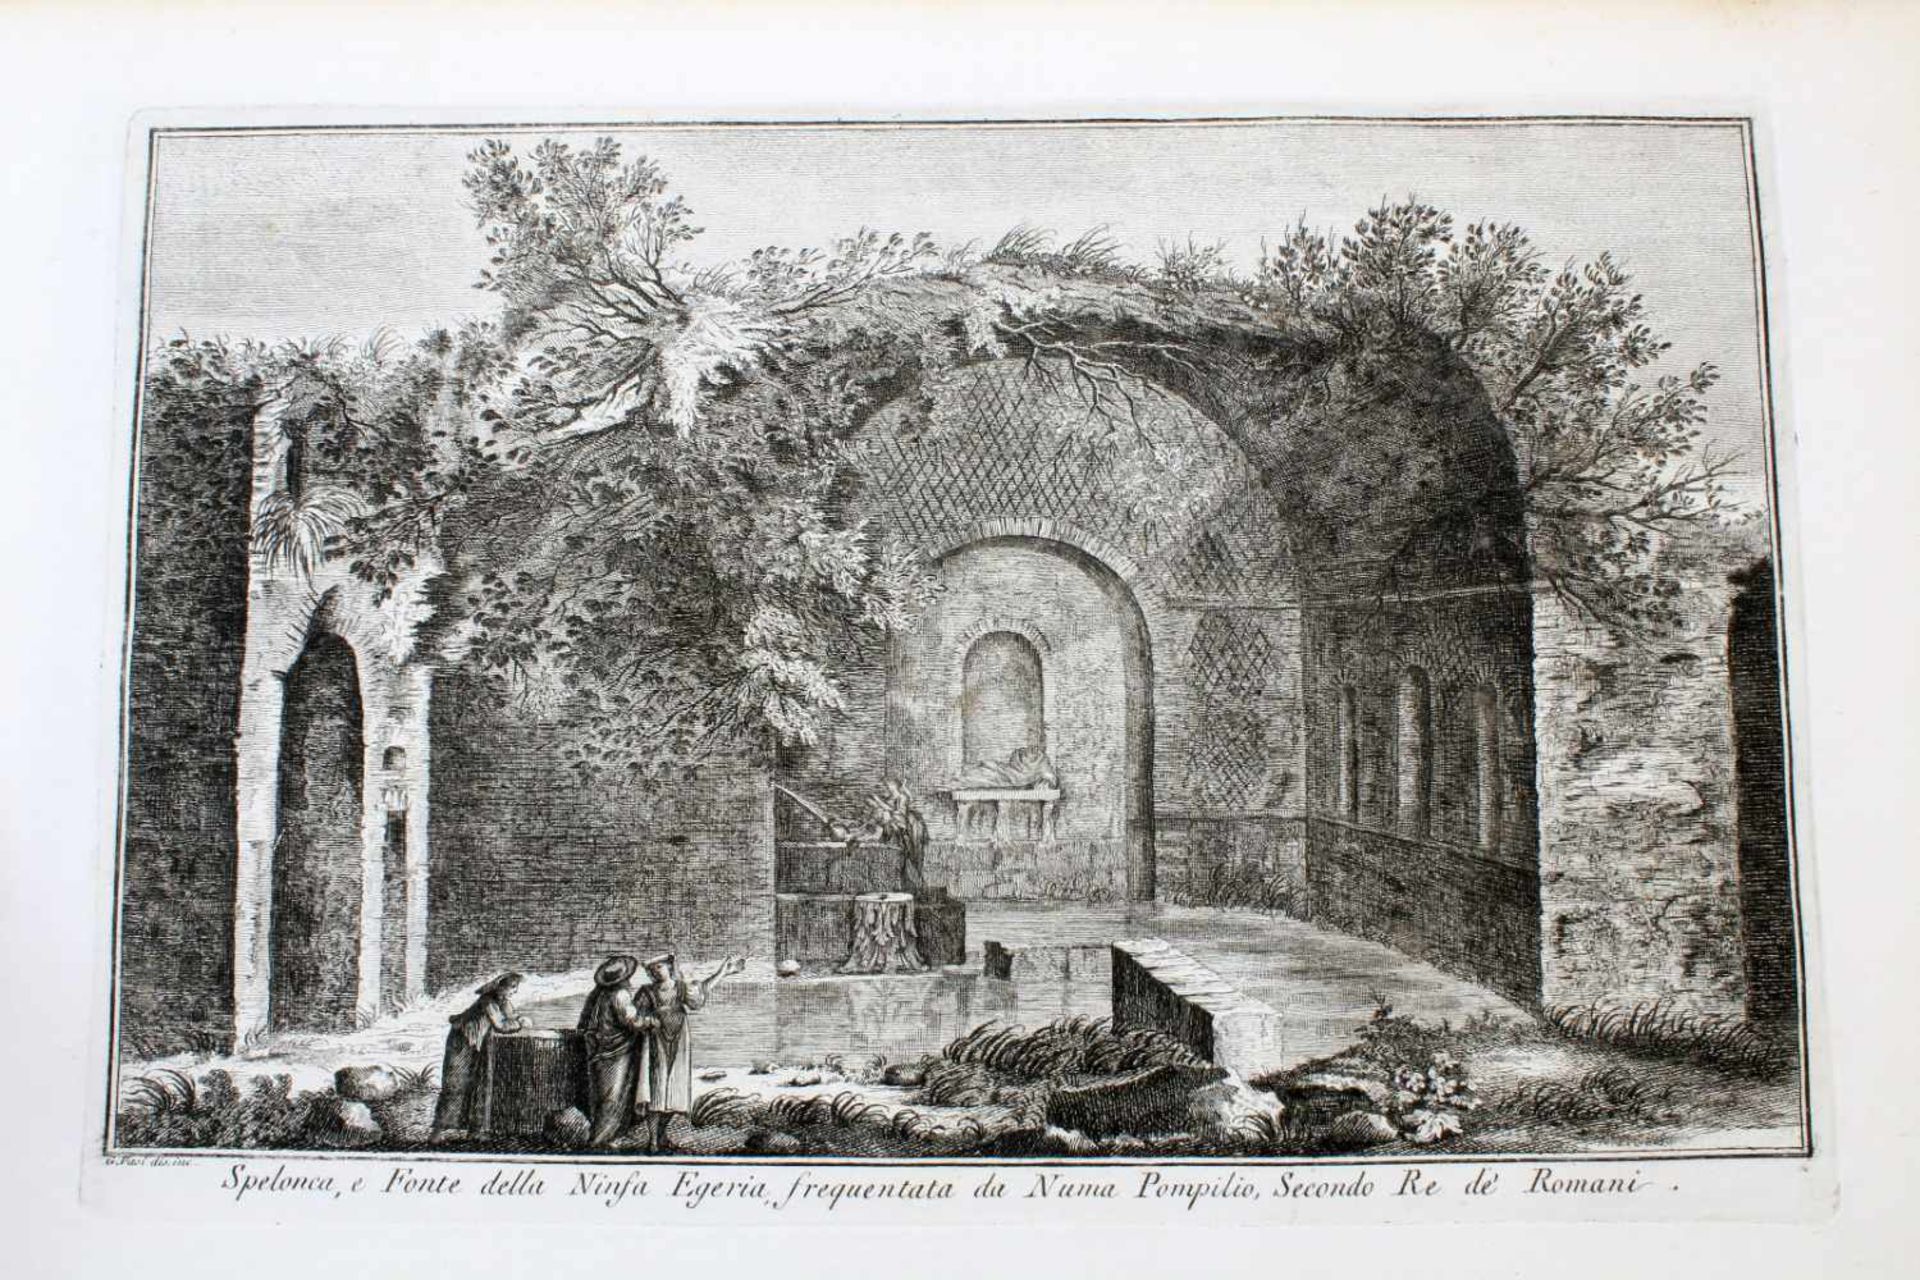 Roma - 64 Originalradierungen Ansichten von Rom - Giuseppe Vasi (1710 - 1782)Die Radierungen sind - Bild 59 aus 69